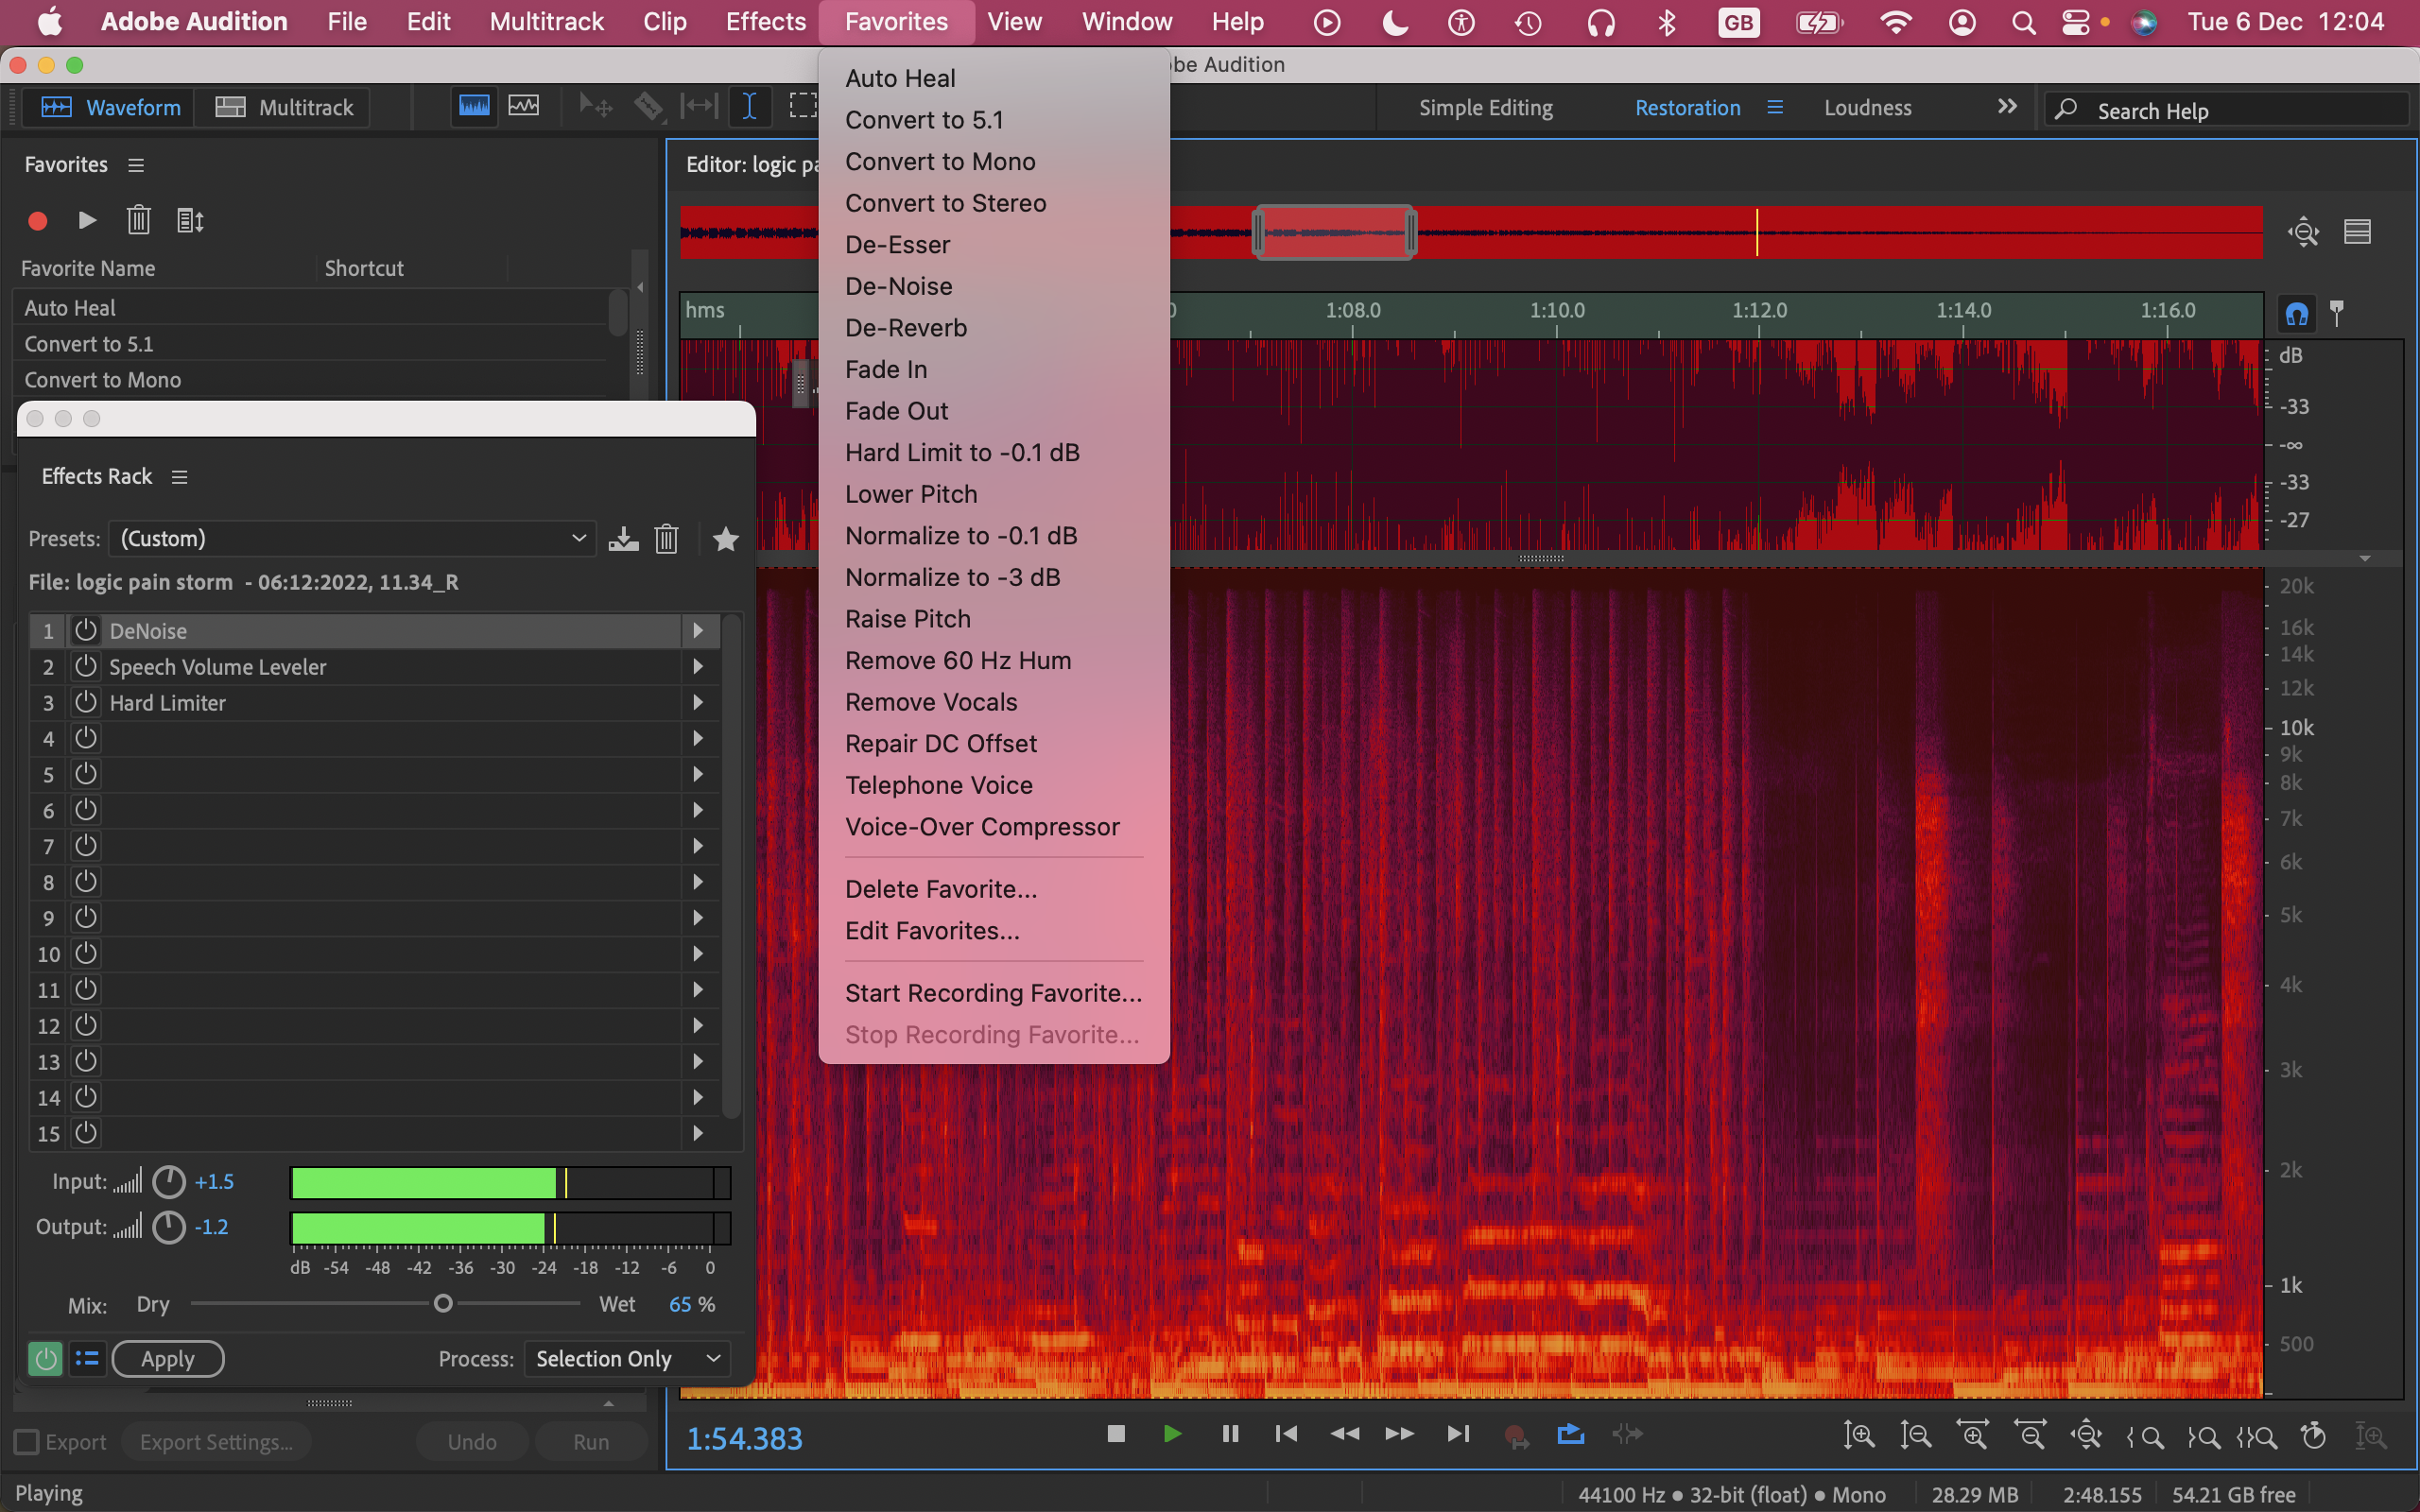 Edição de áudio no Adobe Audition